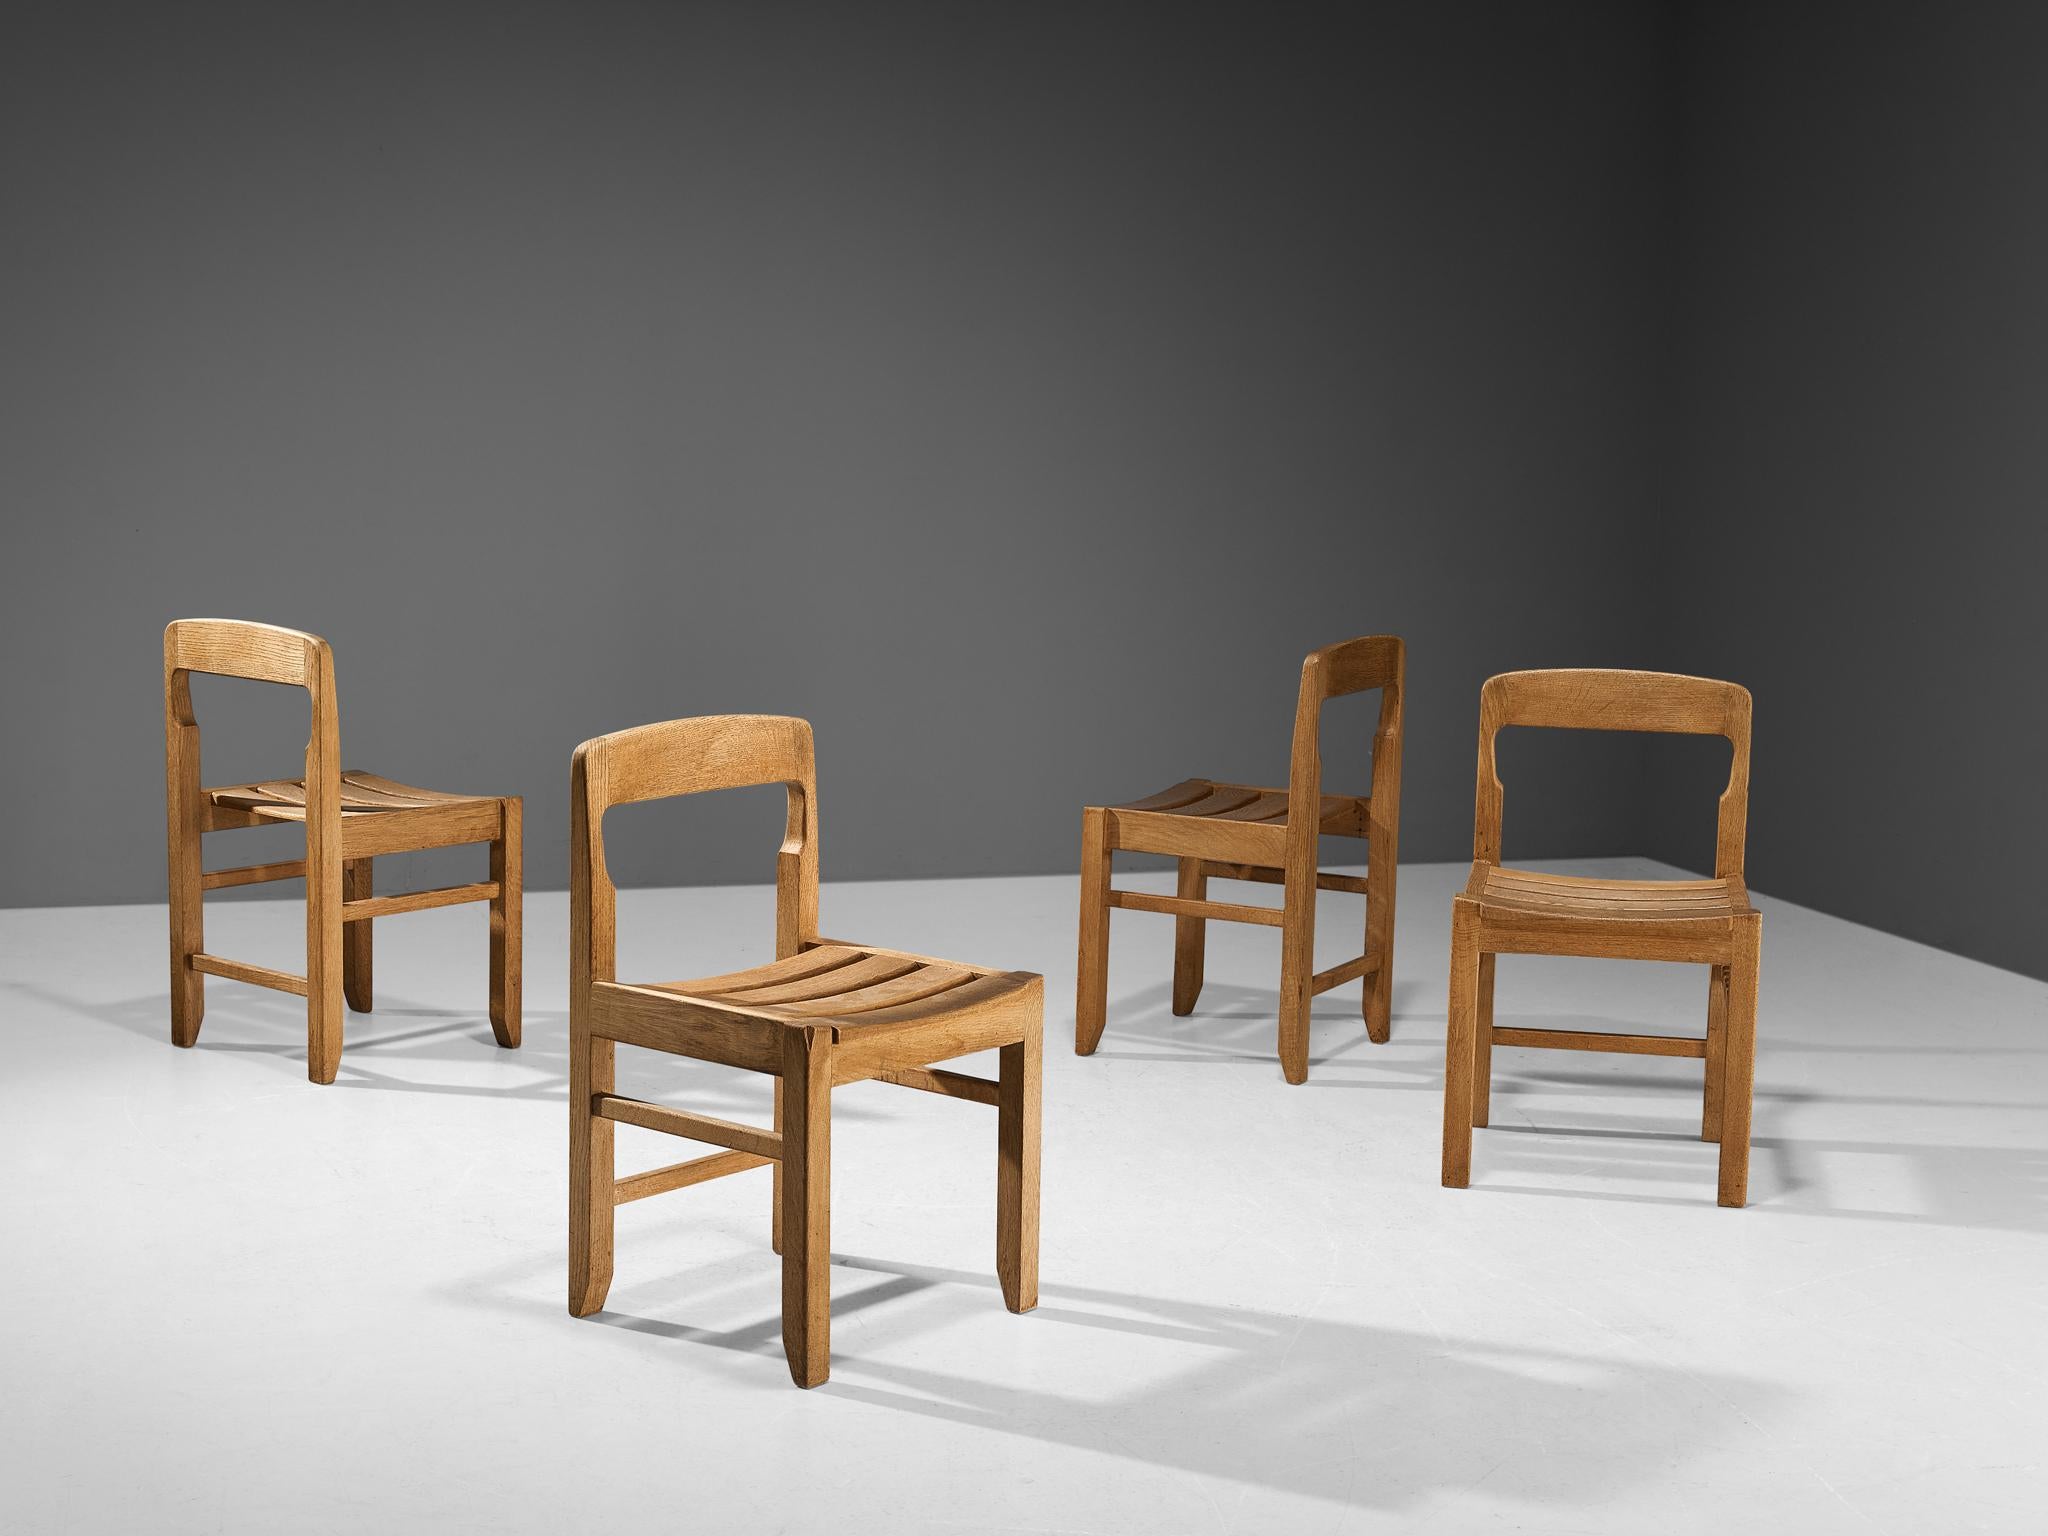 Guillerme et Chambron pour Votre Maison, ensemble de quatre chaises de salle à manger, chêne massif, France, années 1960.

Ces chaises présentent l'armature caractéristique du duo de designers français, bien fabriquée, solide et sculpturale.  Les